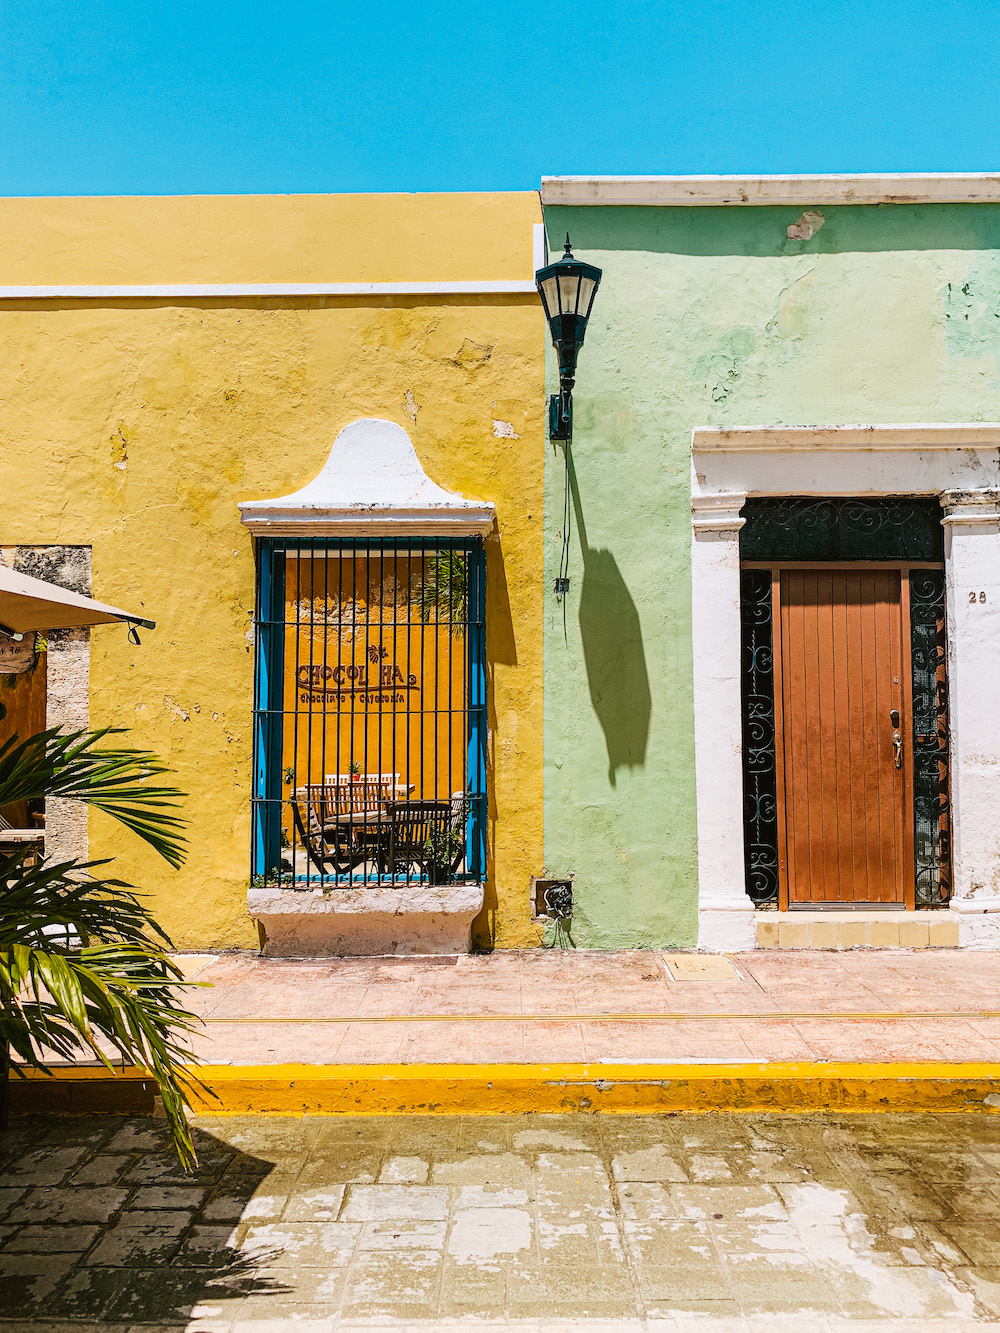 campeche mexico pastel kleurige huisjes